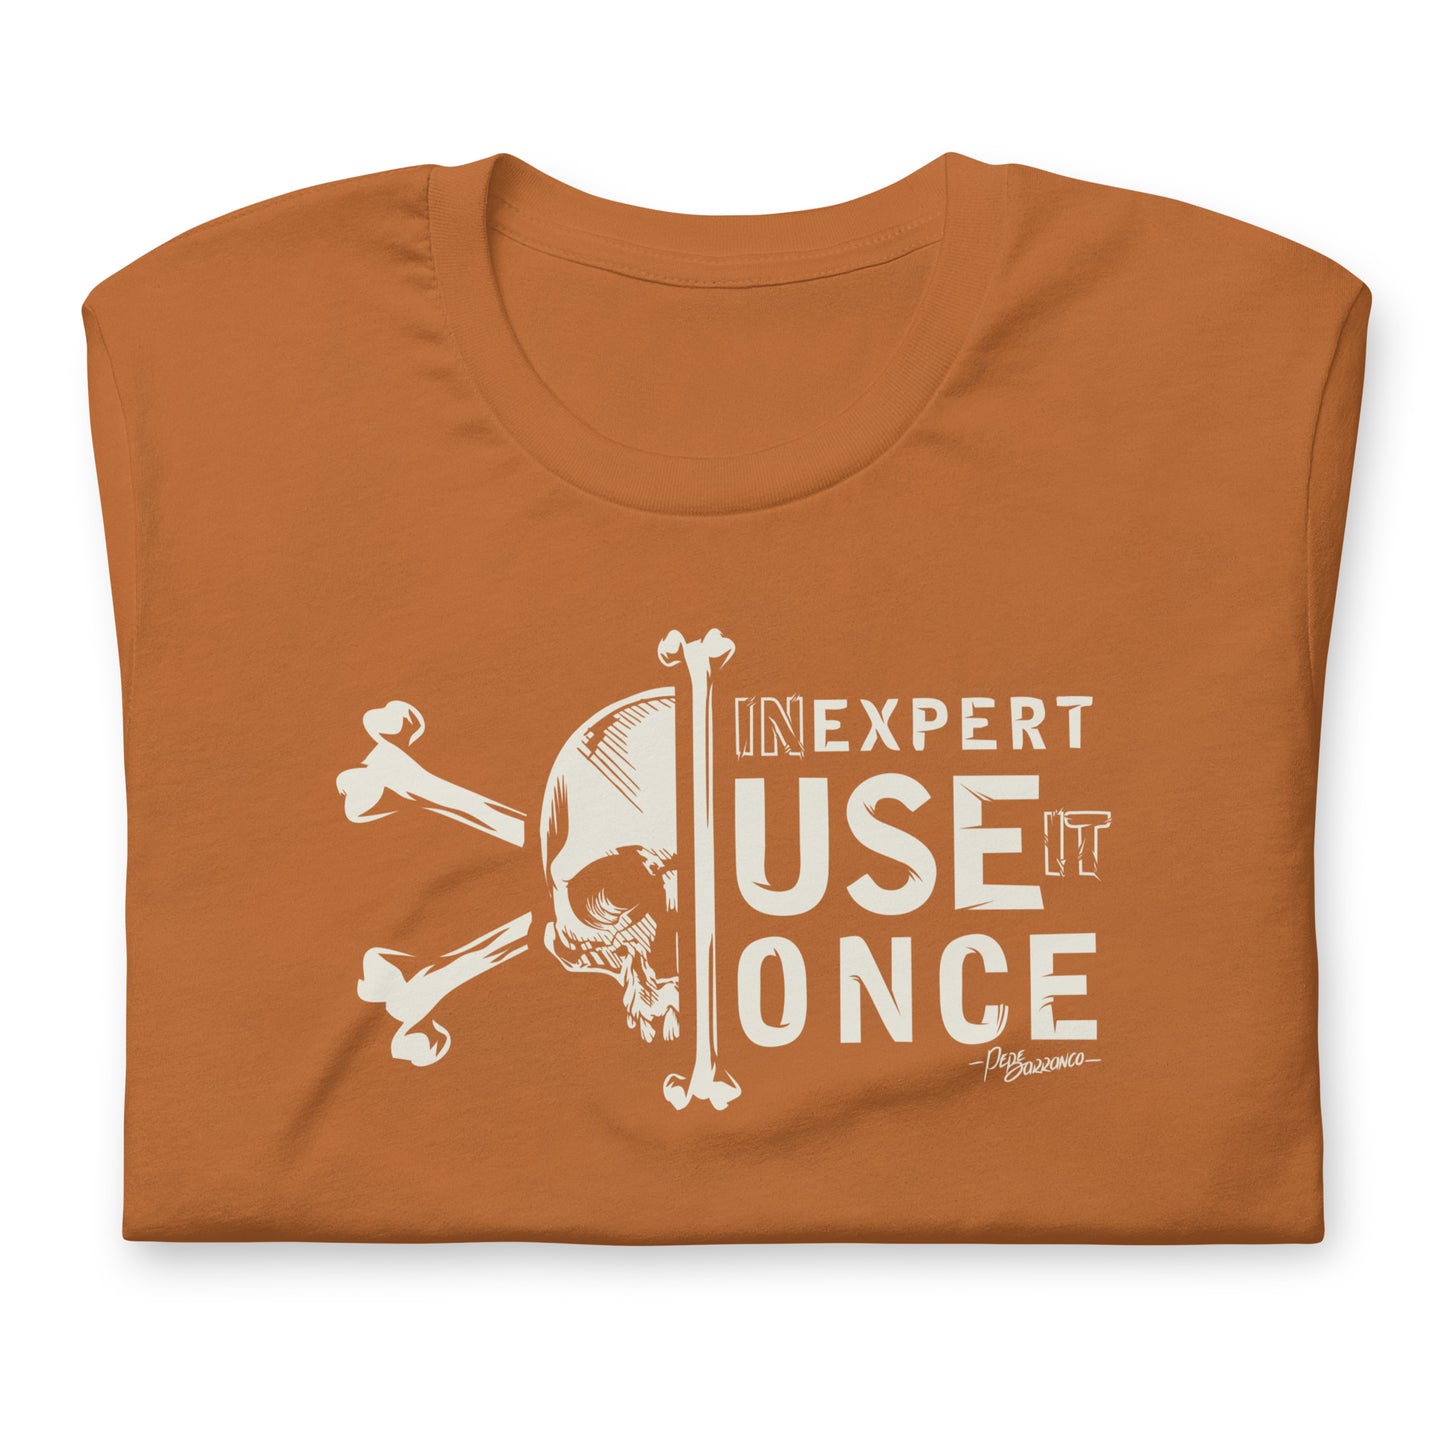 Camiseta "UN EXPERT"